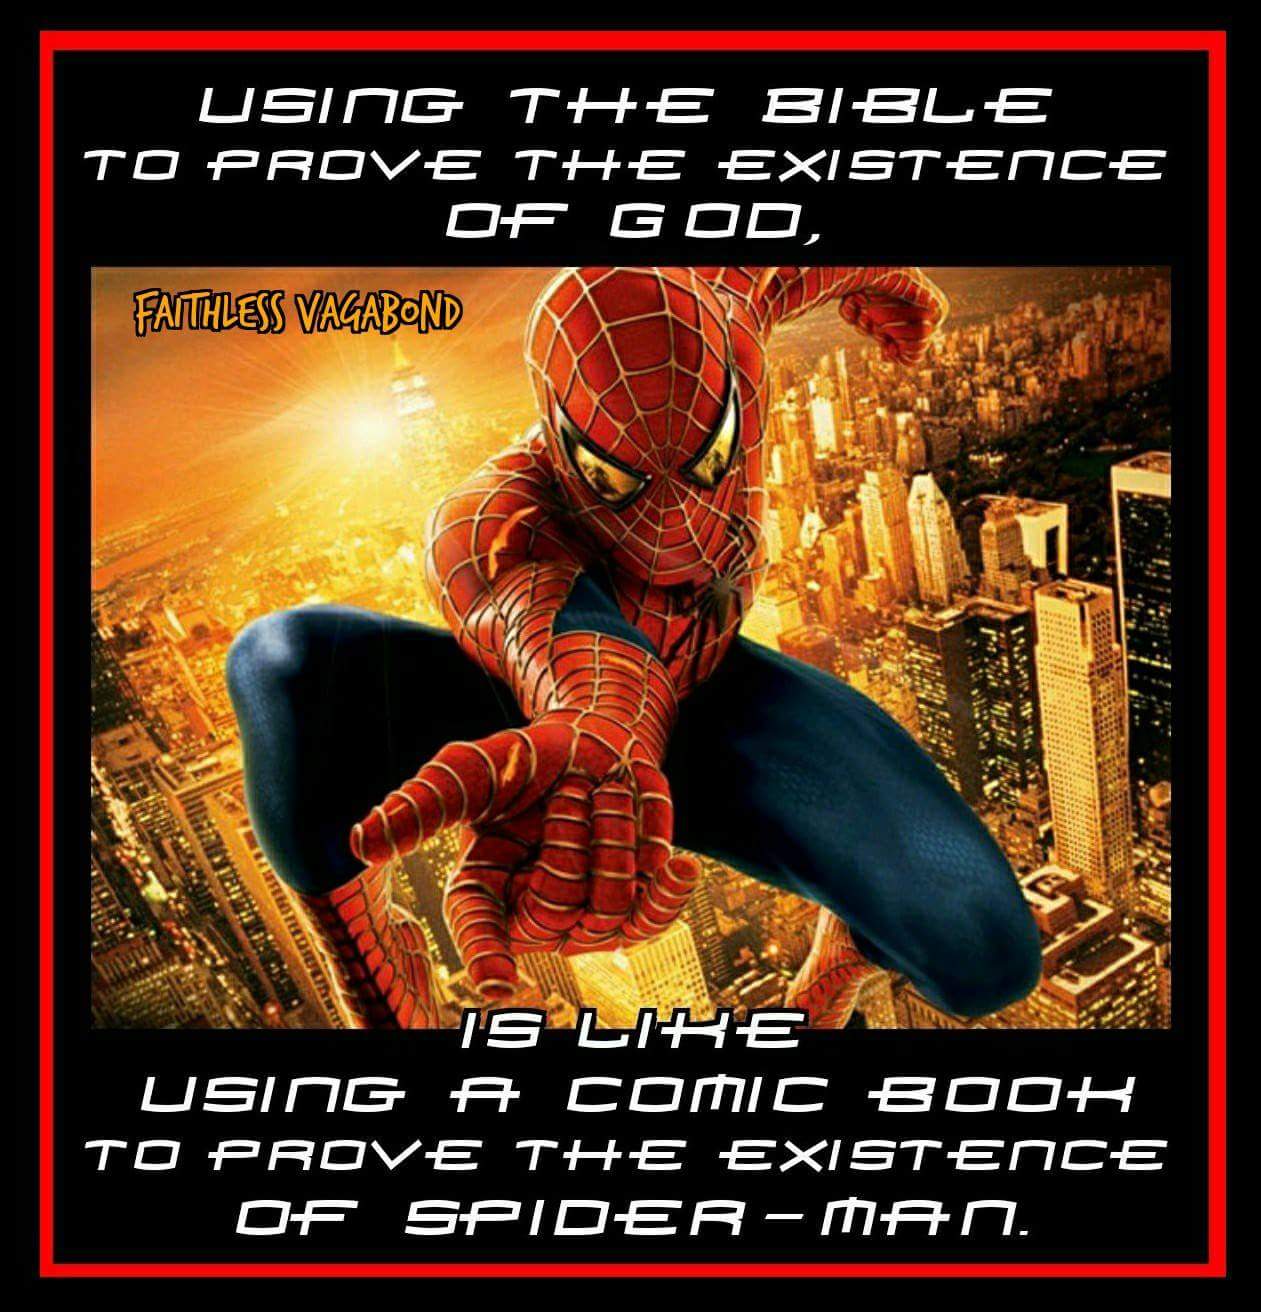 The Bible is Mythology